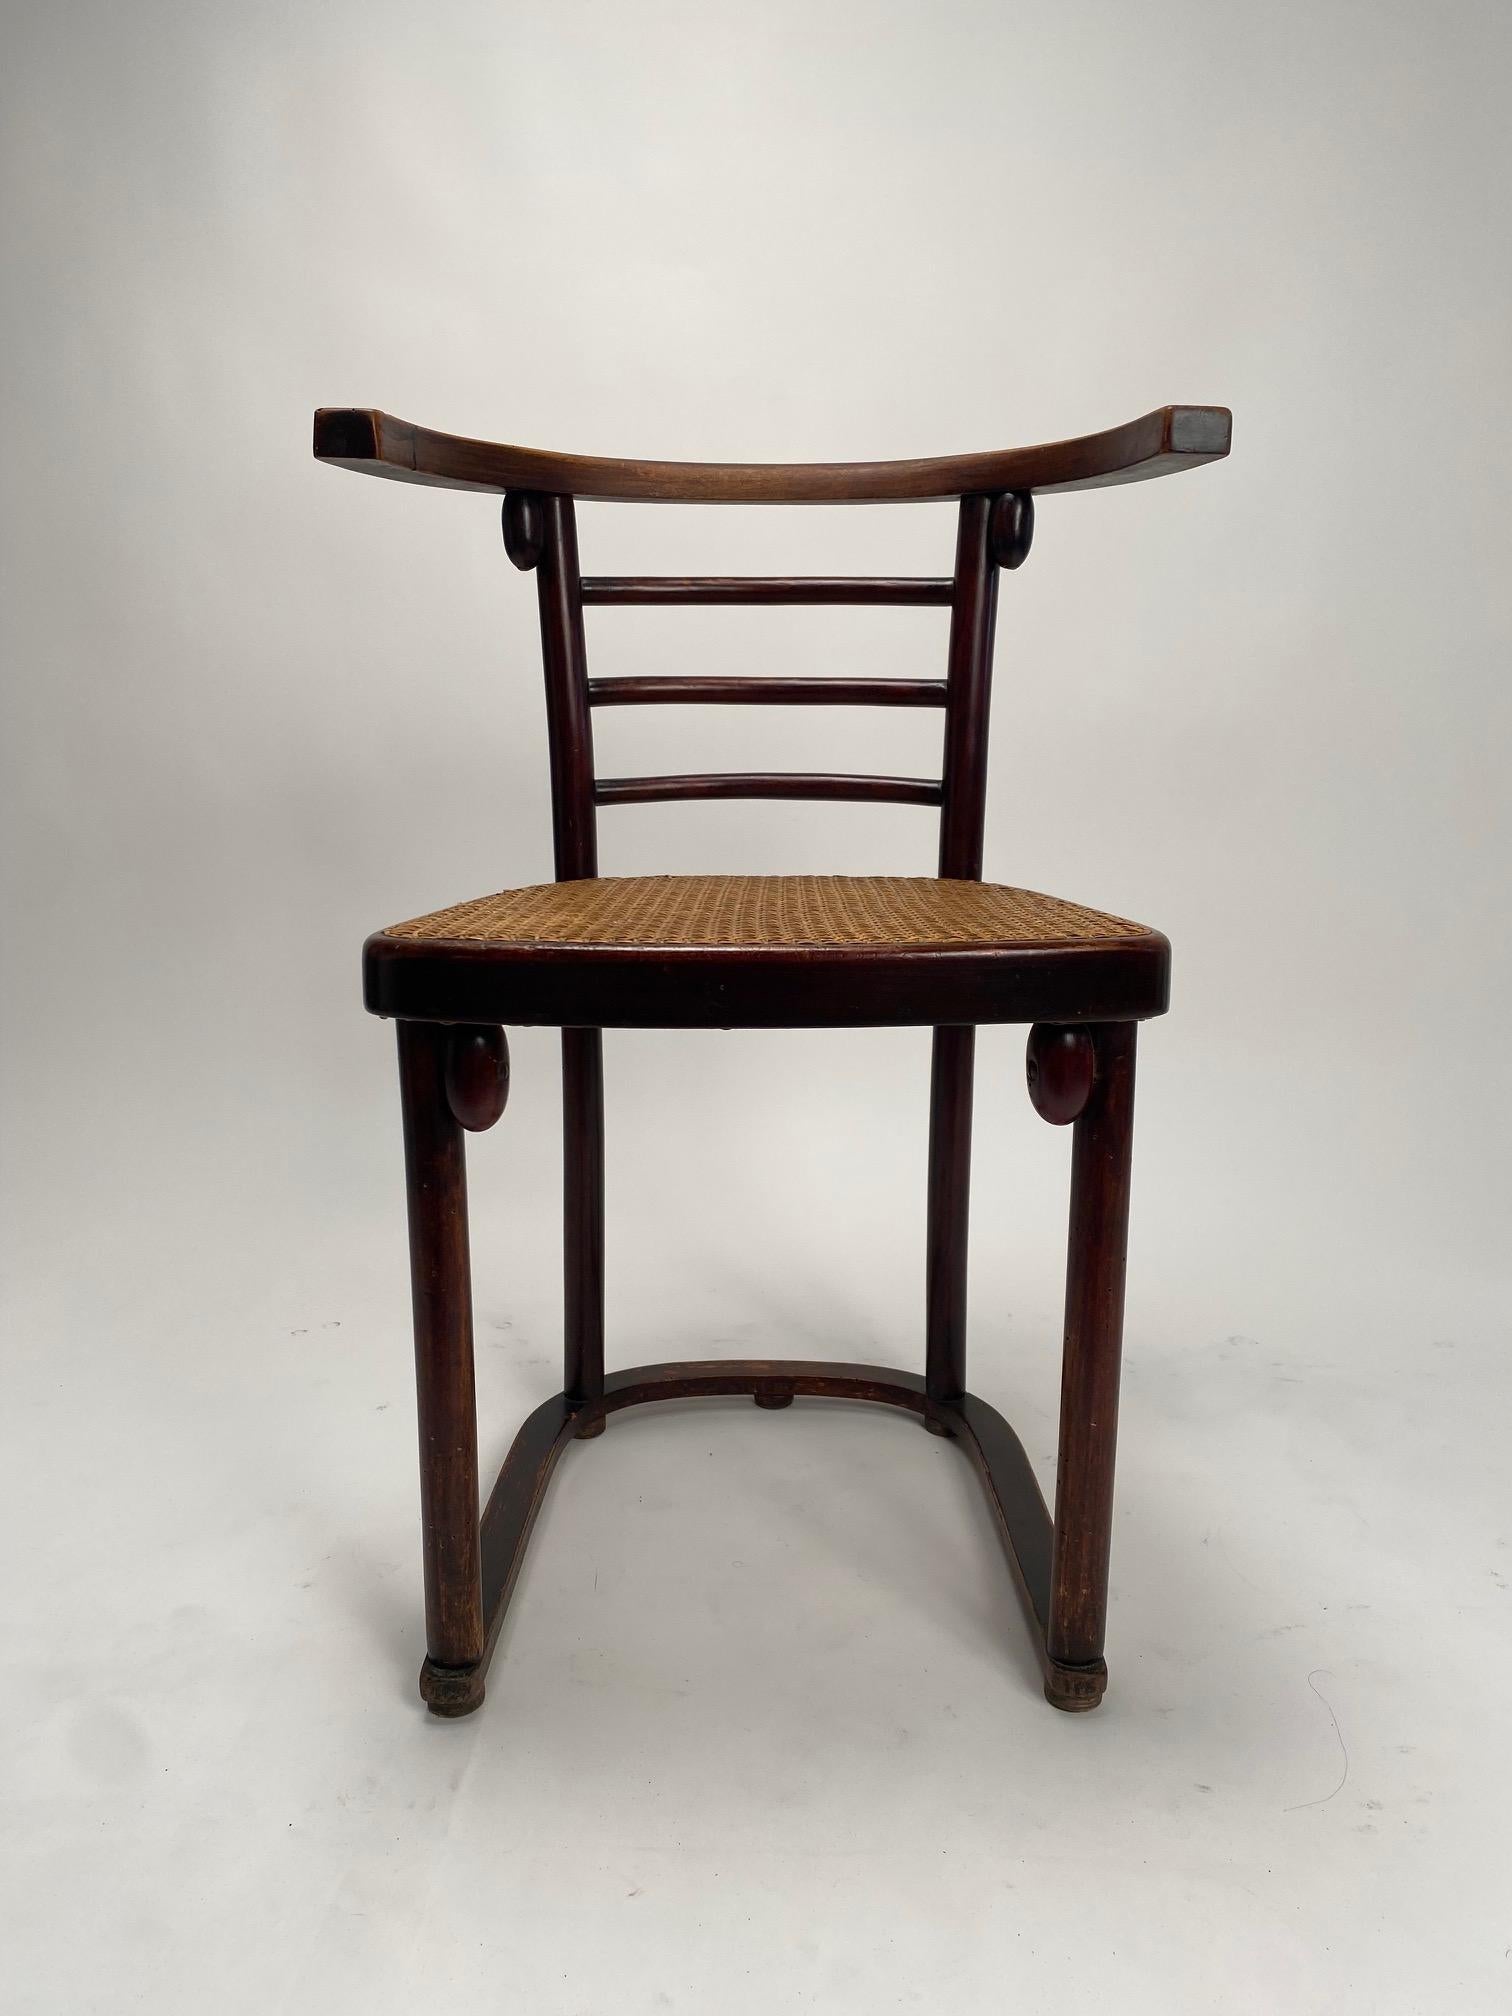 Quatre chaises en bois courbé mod. Fledermaus de Josef Hoffmann pour Thonet, années 1910

Il s'agit de l'une des créations les plus célèbres de l'architecte autrichien Josef Hoffmann, l'un des pères fondateurs de la Sécession viennoise. Construites